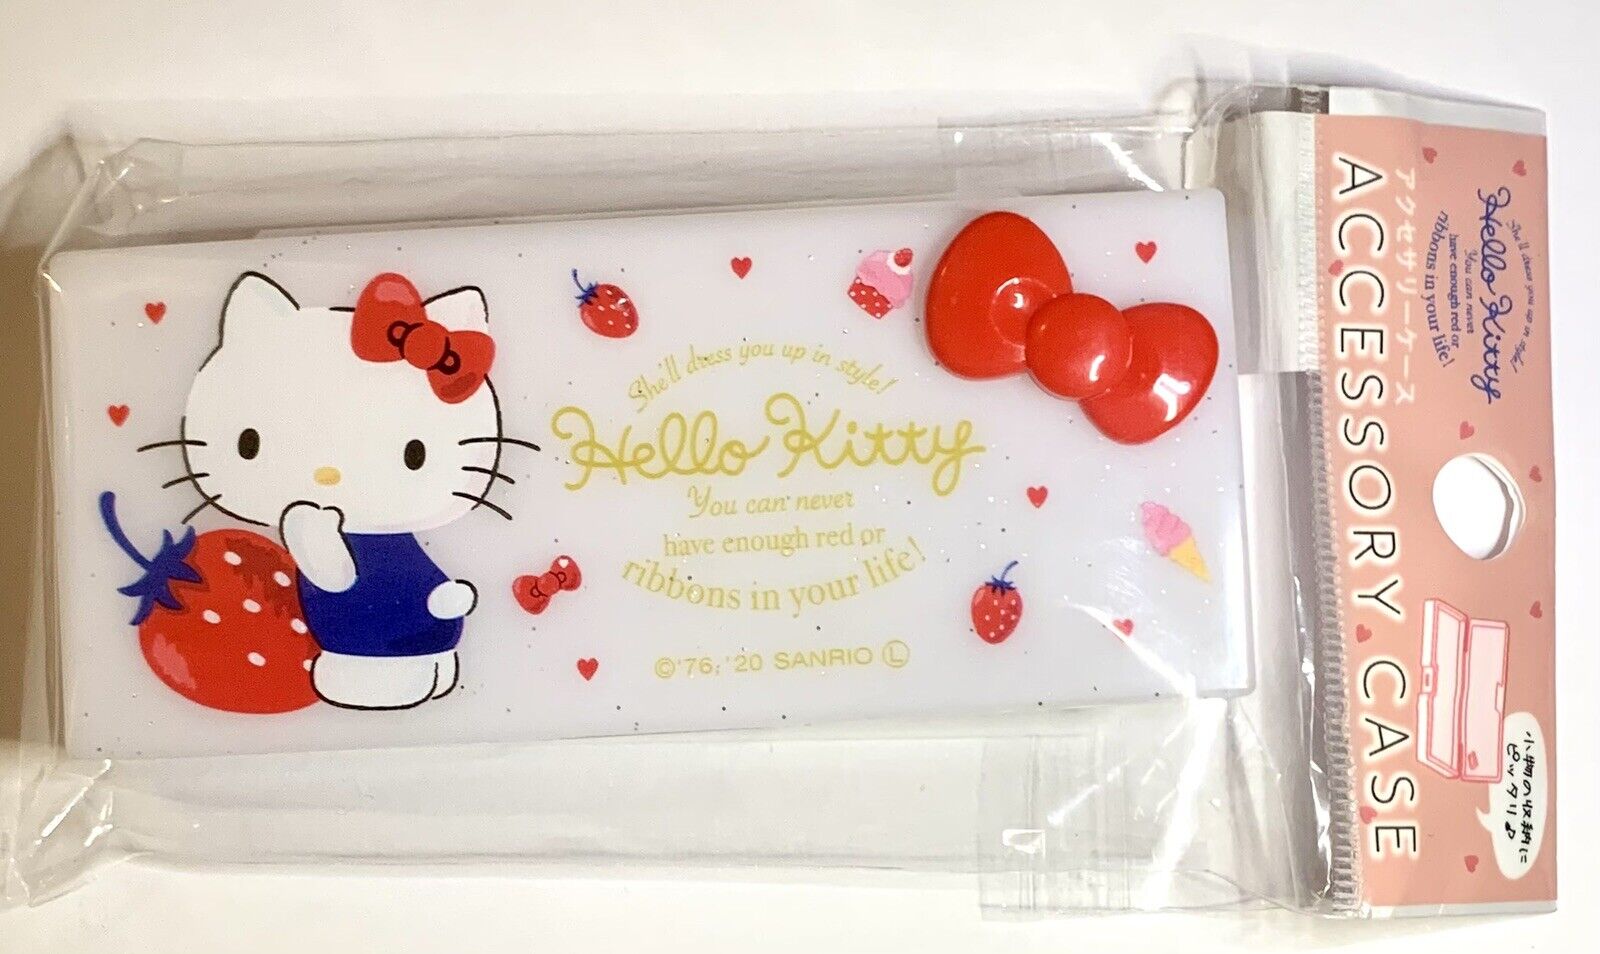 Sanrio x Daiso Hello Kitty Accessory Glitter Case Mini Box, Travel Compact